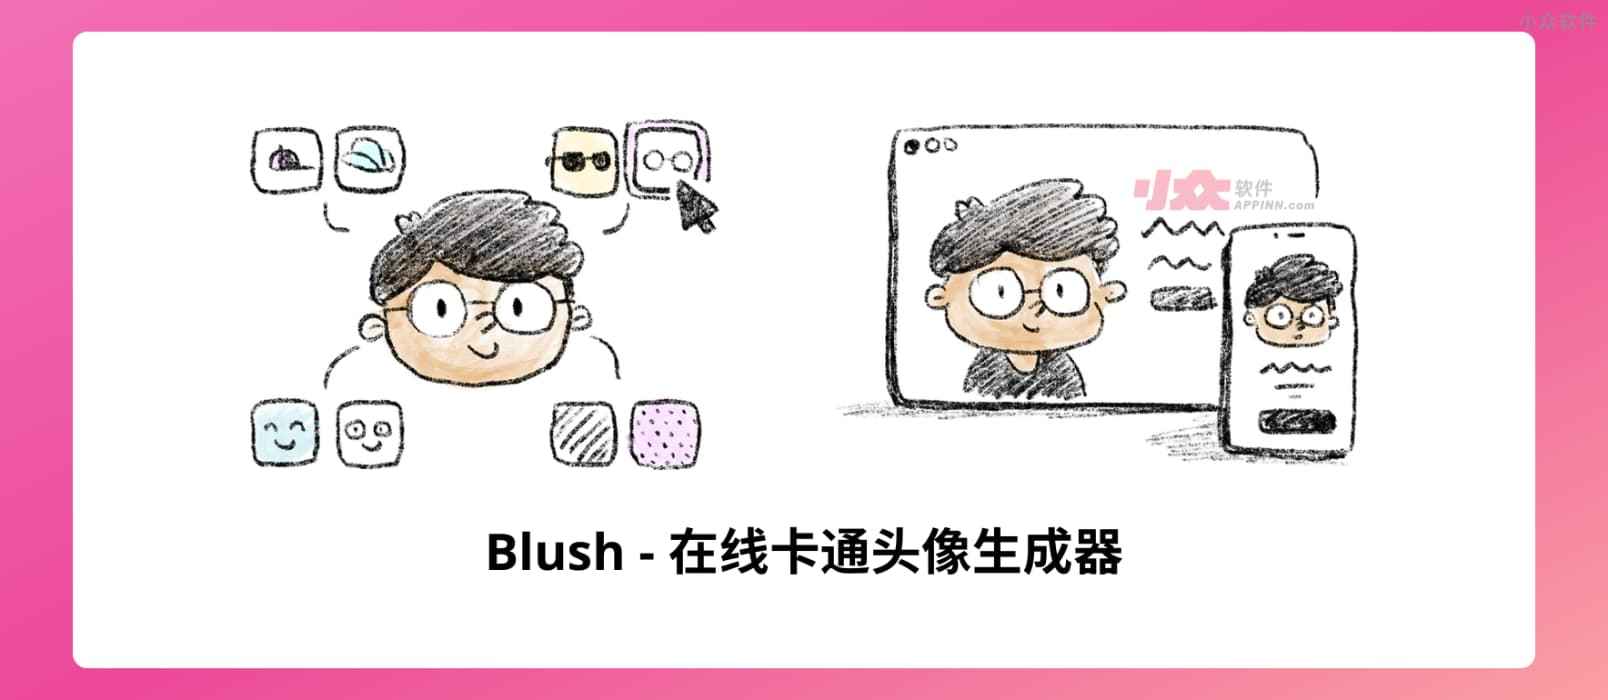 Blush - 在线卡通头像生成器，免费、可商用，无需注明出处